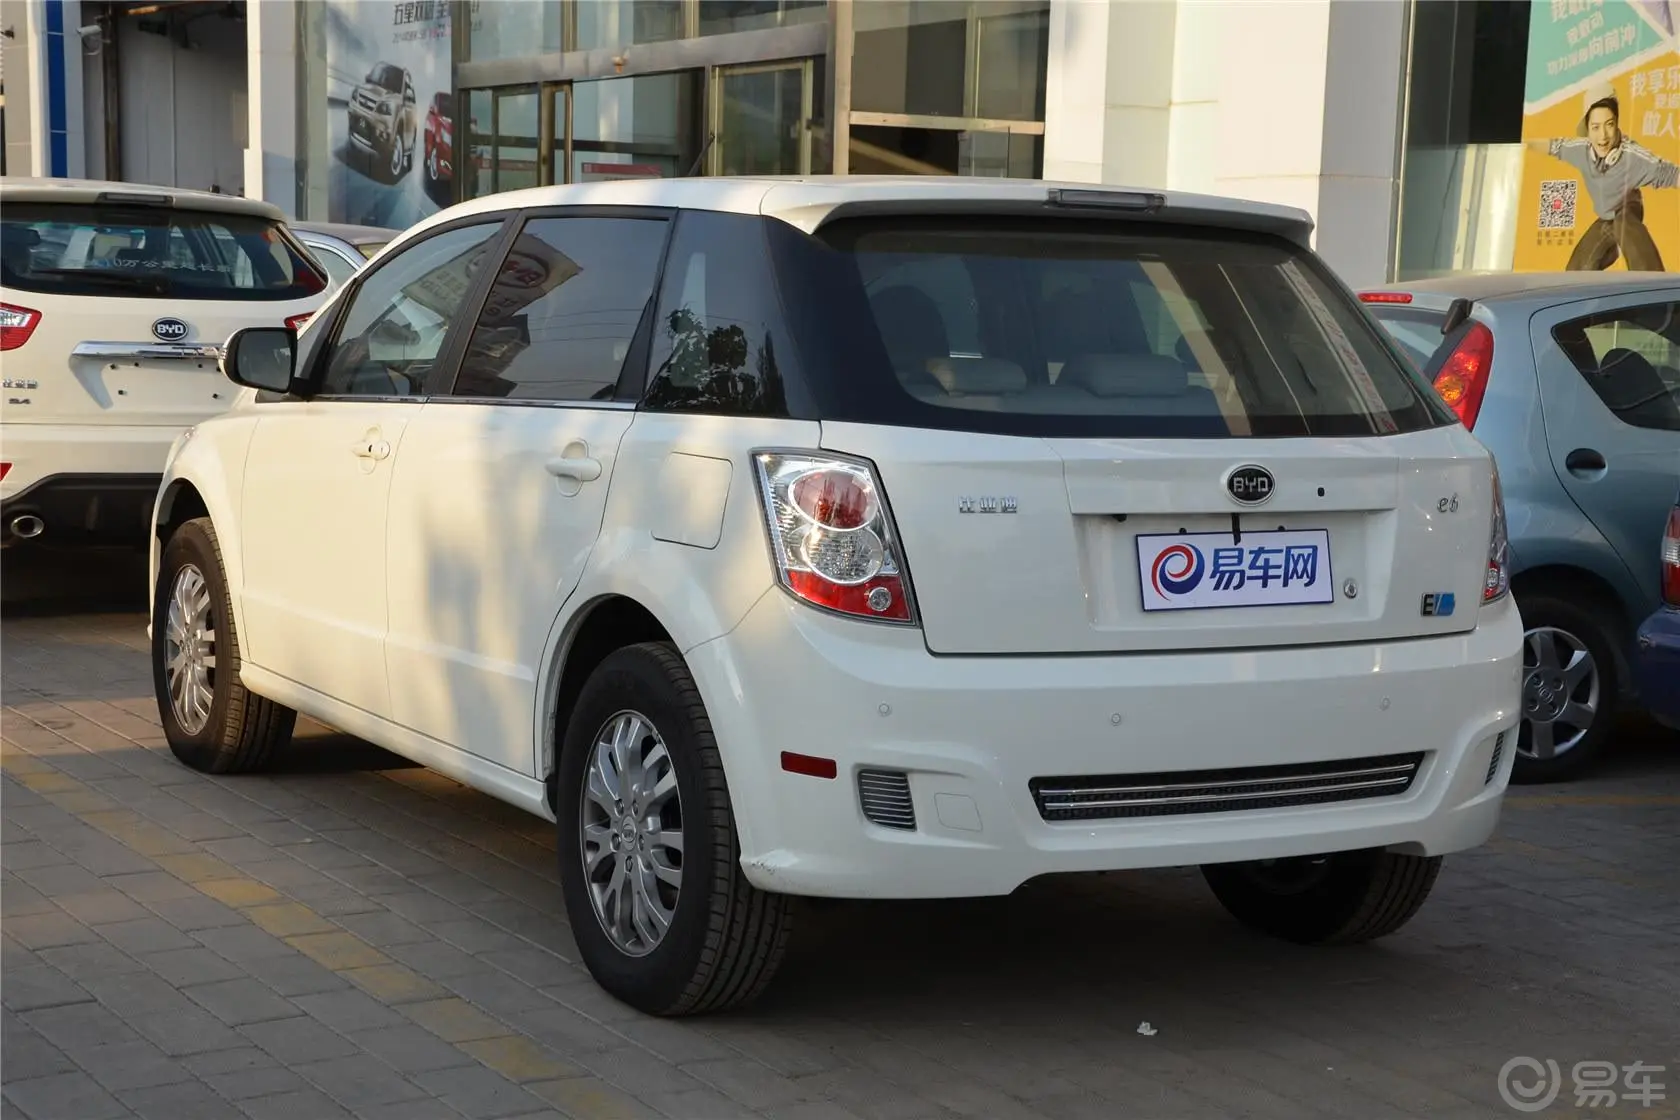 比亚迪e6精英版(北京版)侧后45度车头向左水平